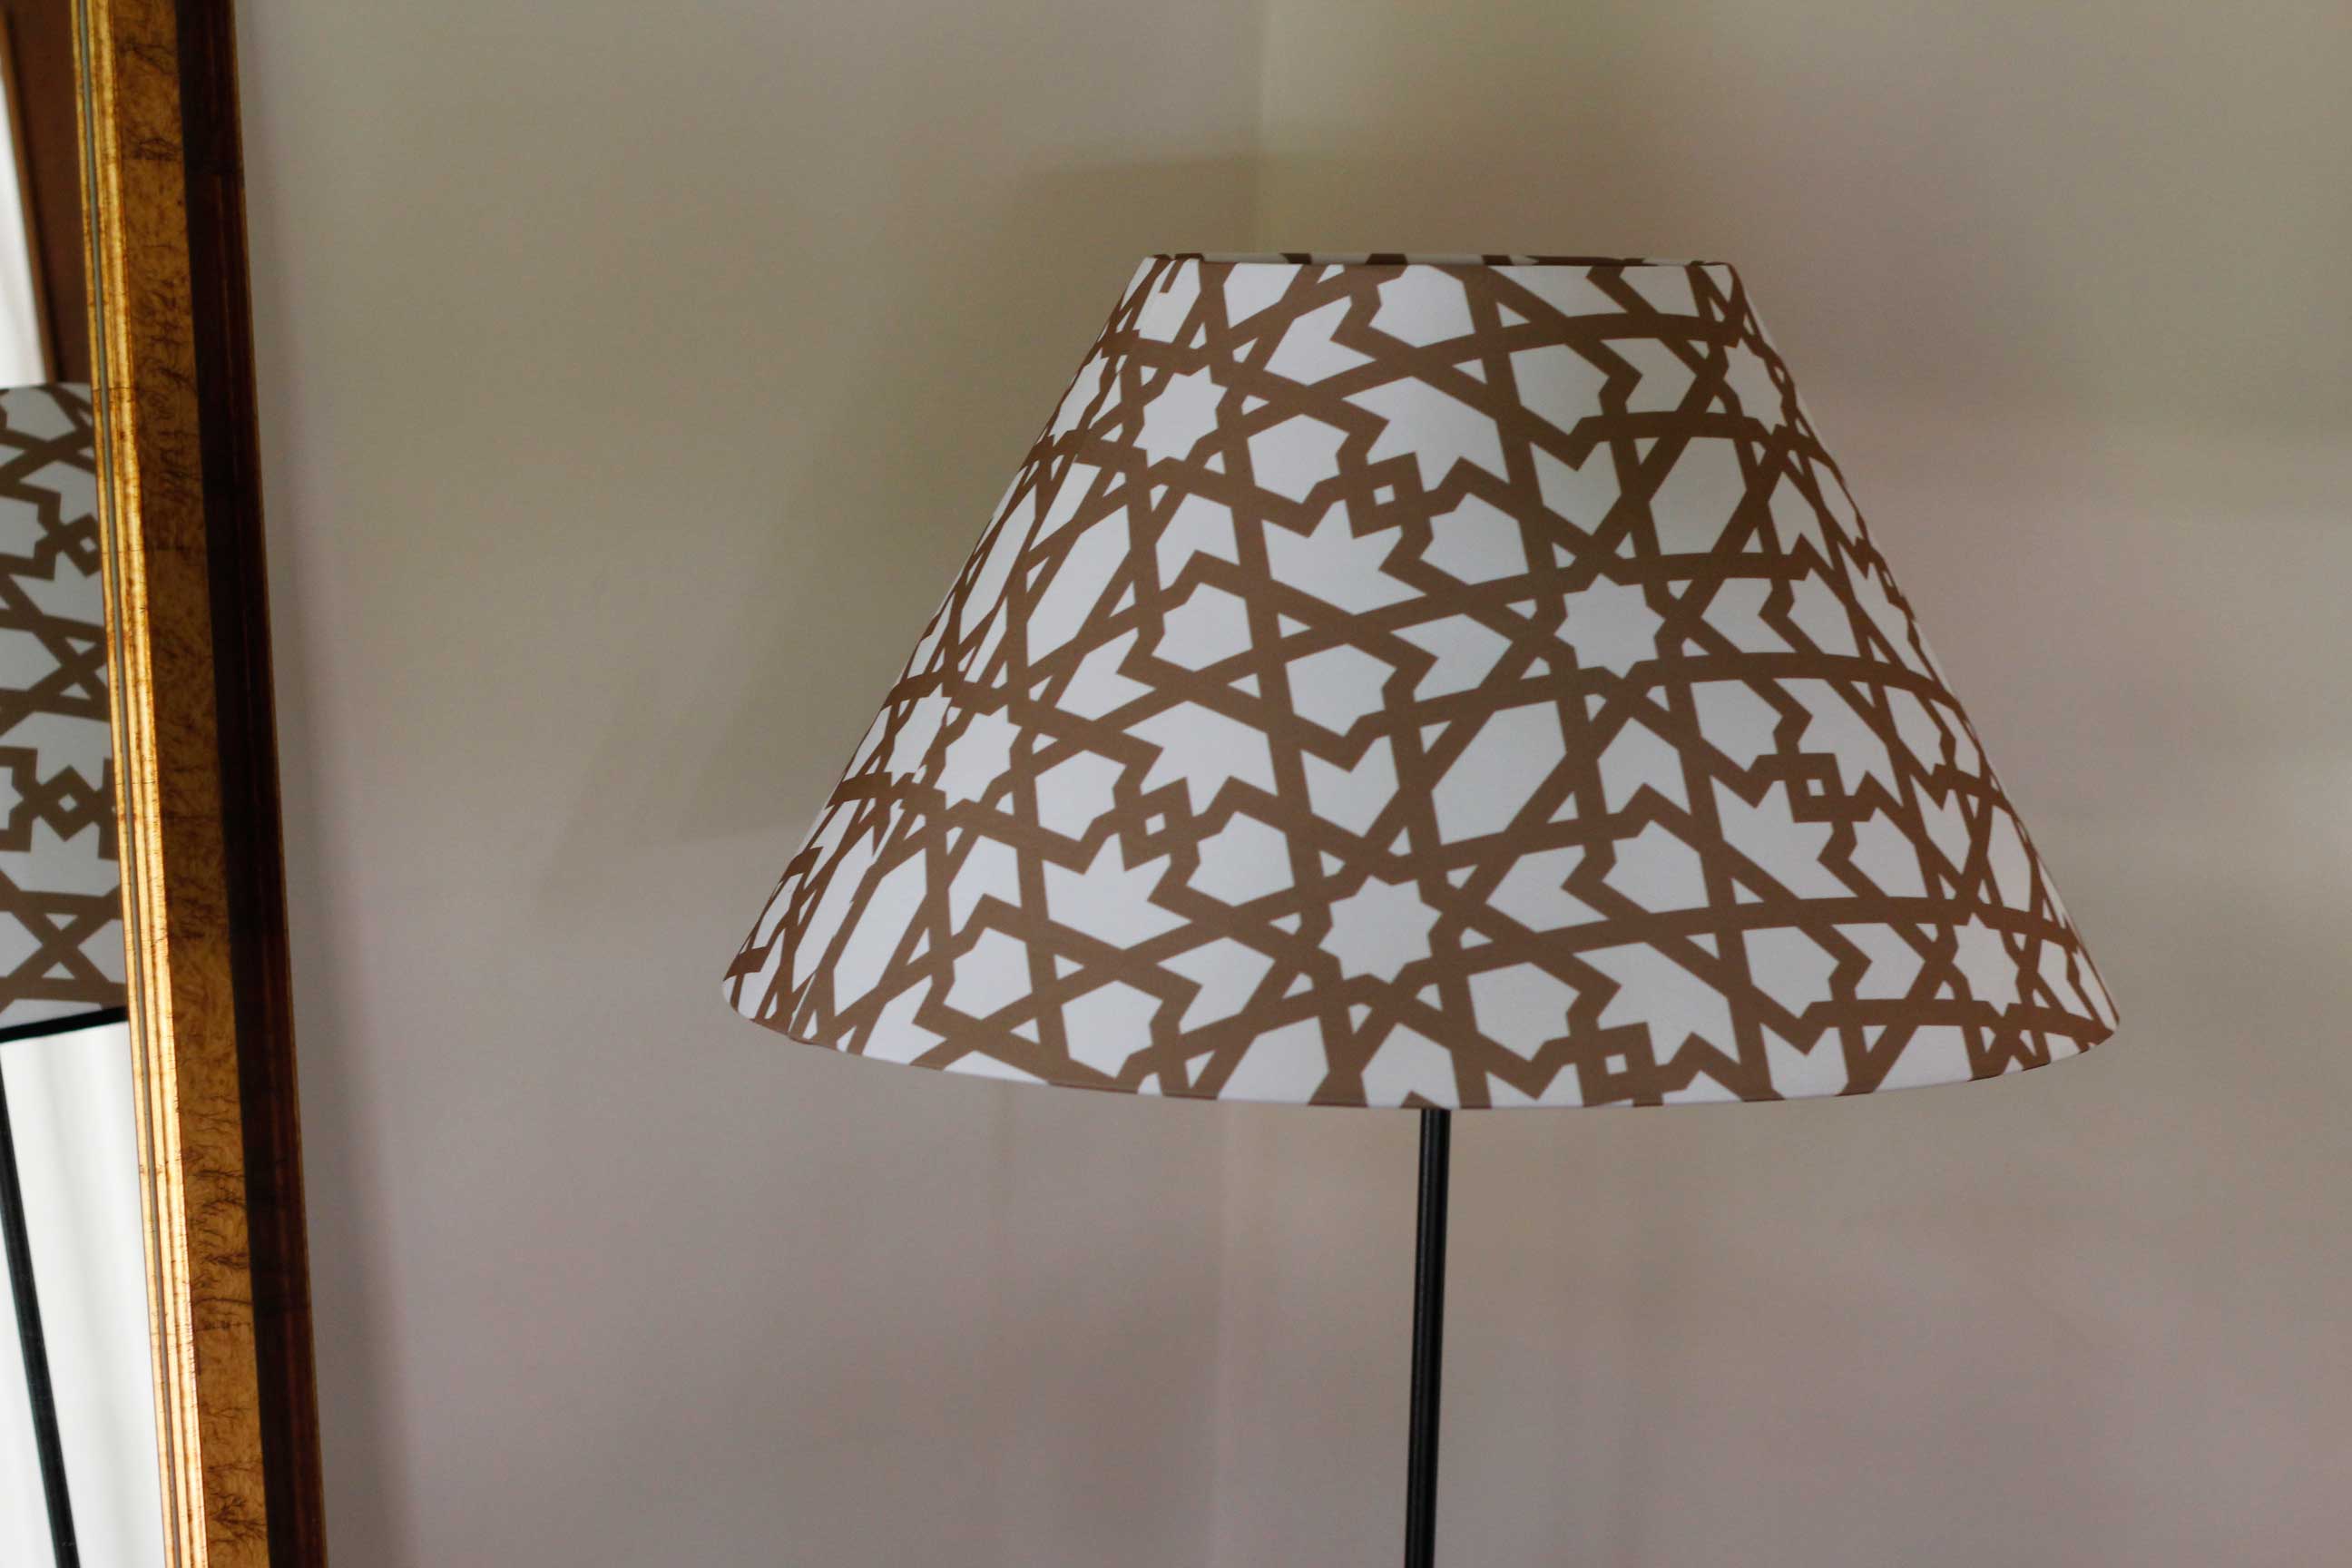 Pantalla para lampara personalizada con la imagen de la celosía de Cervezas Alhambra fabricada por Portage